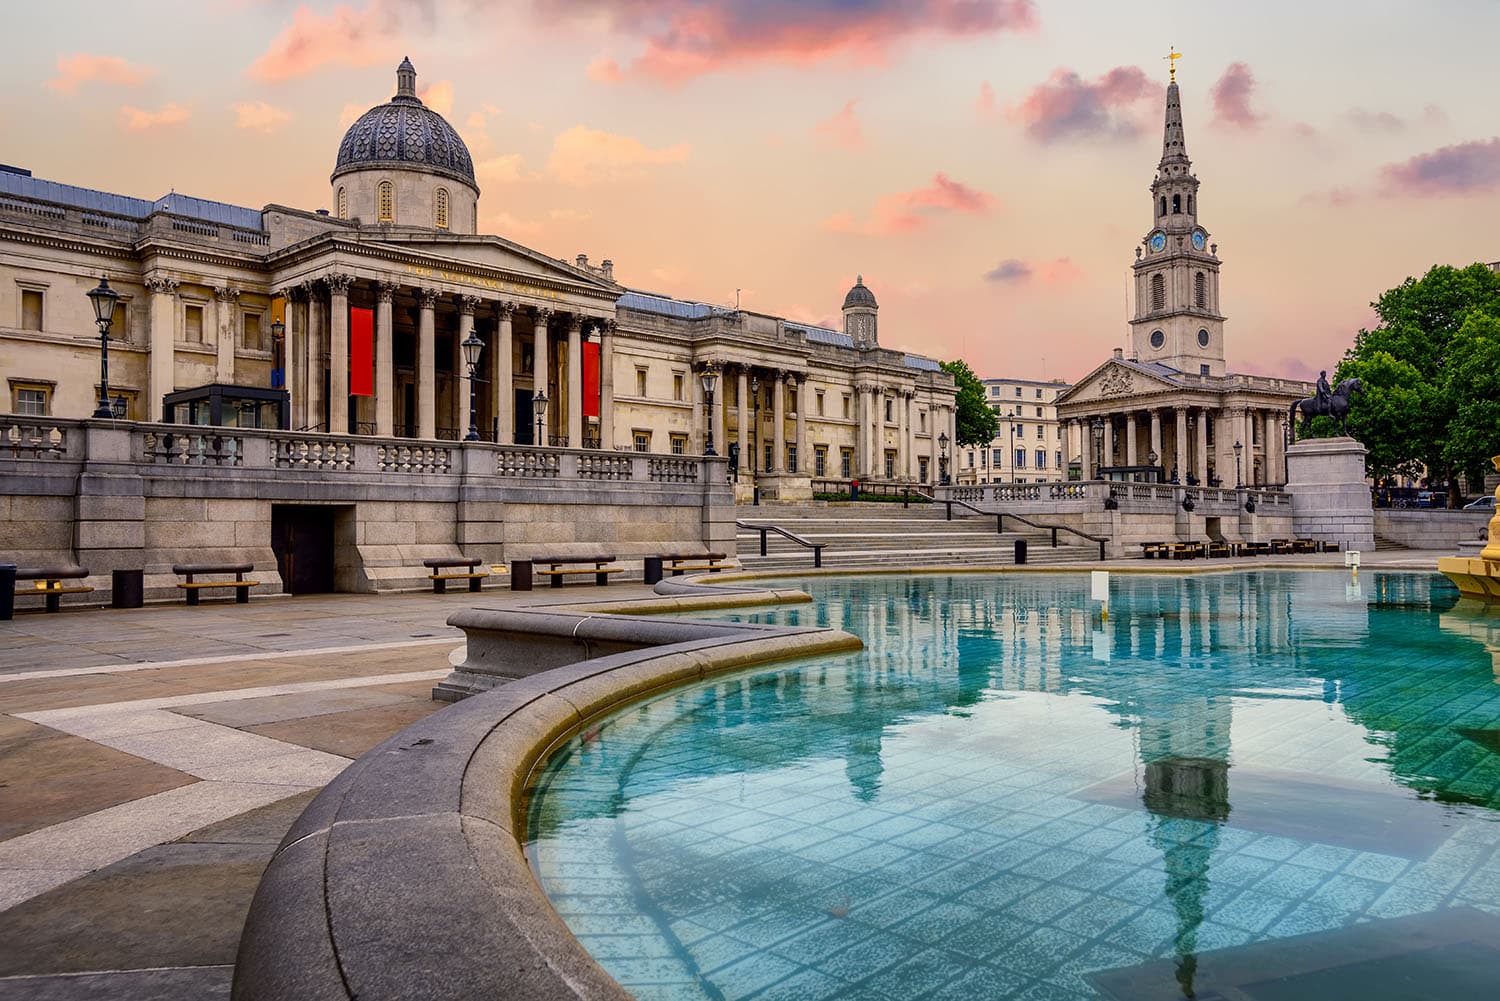 Visiter Londres en 3 jours - The Trafalgar square